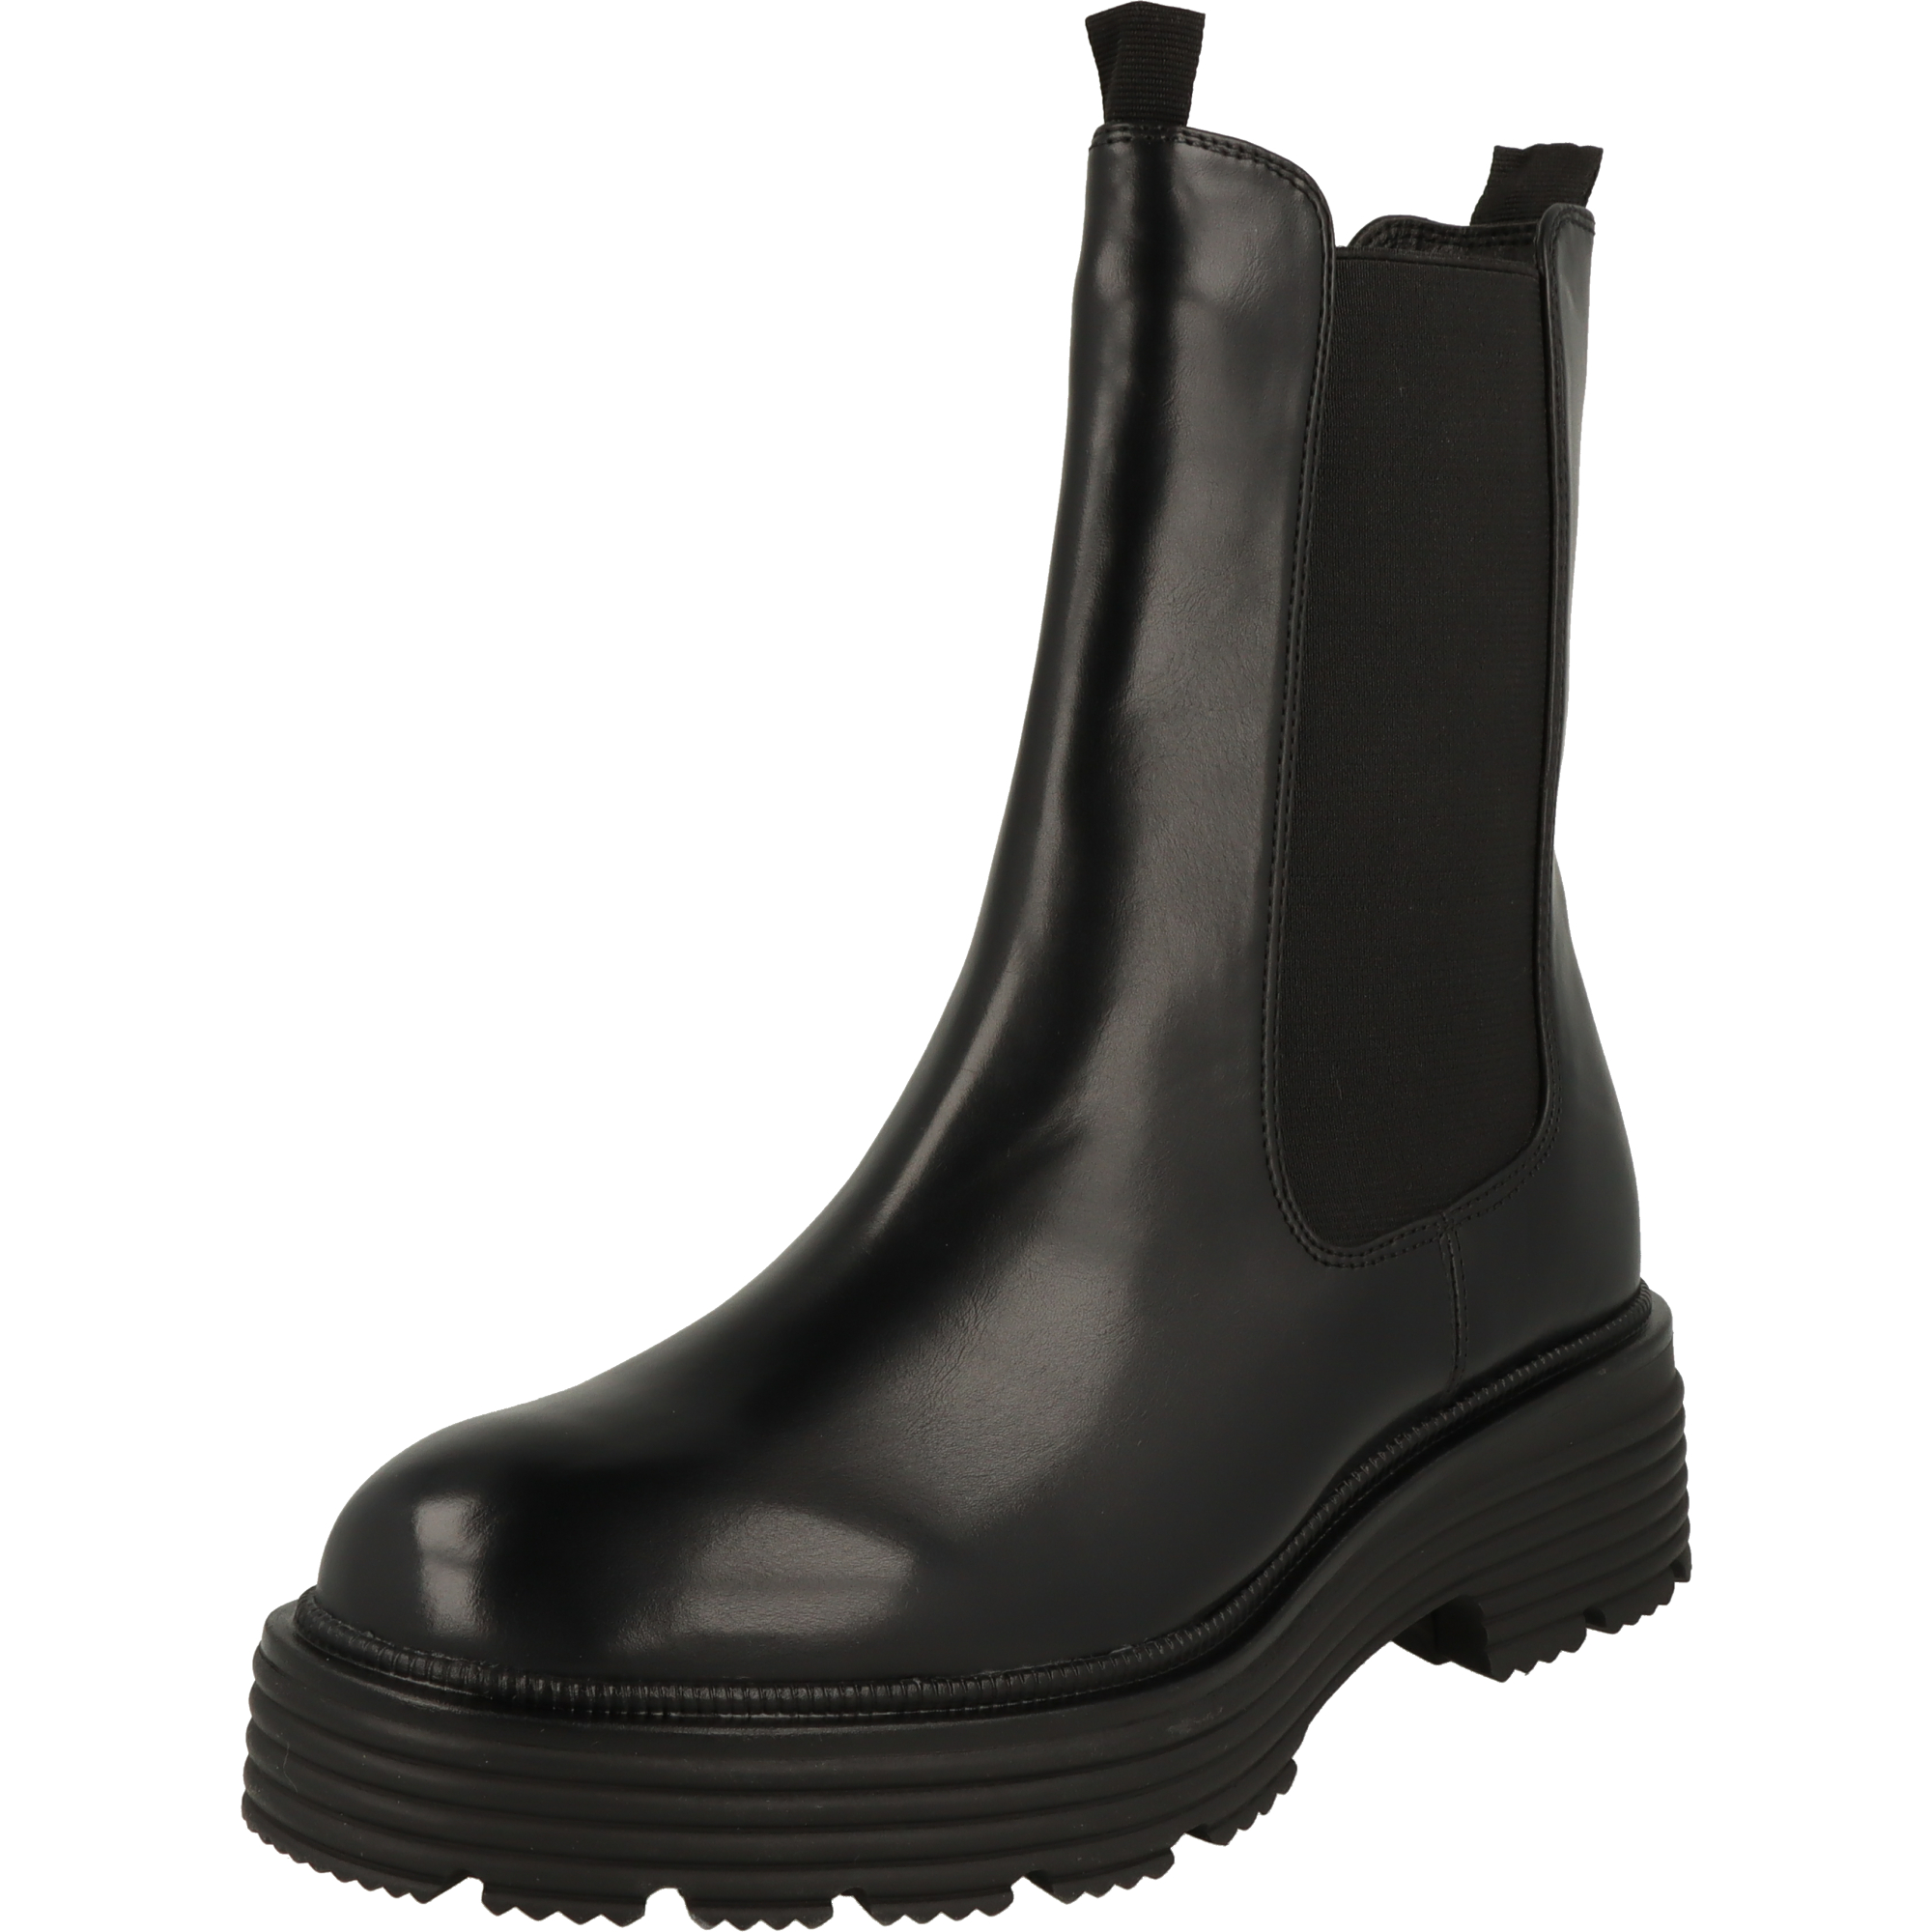 Tamaris Damen Schuhe Plateau Chelsea Boots Stiefel 1-25426-41 007 Schwarz Uni